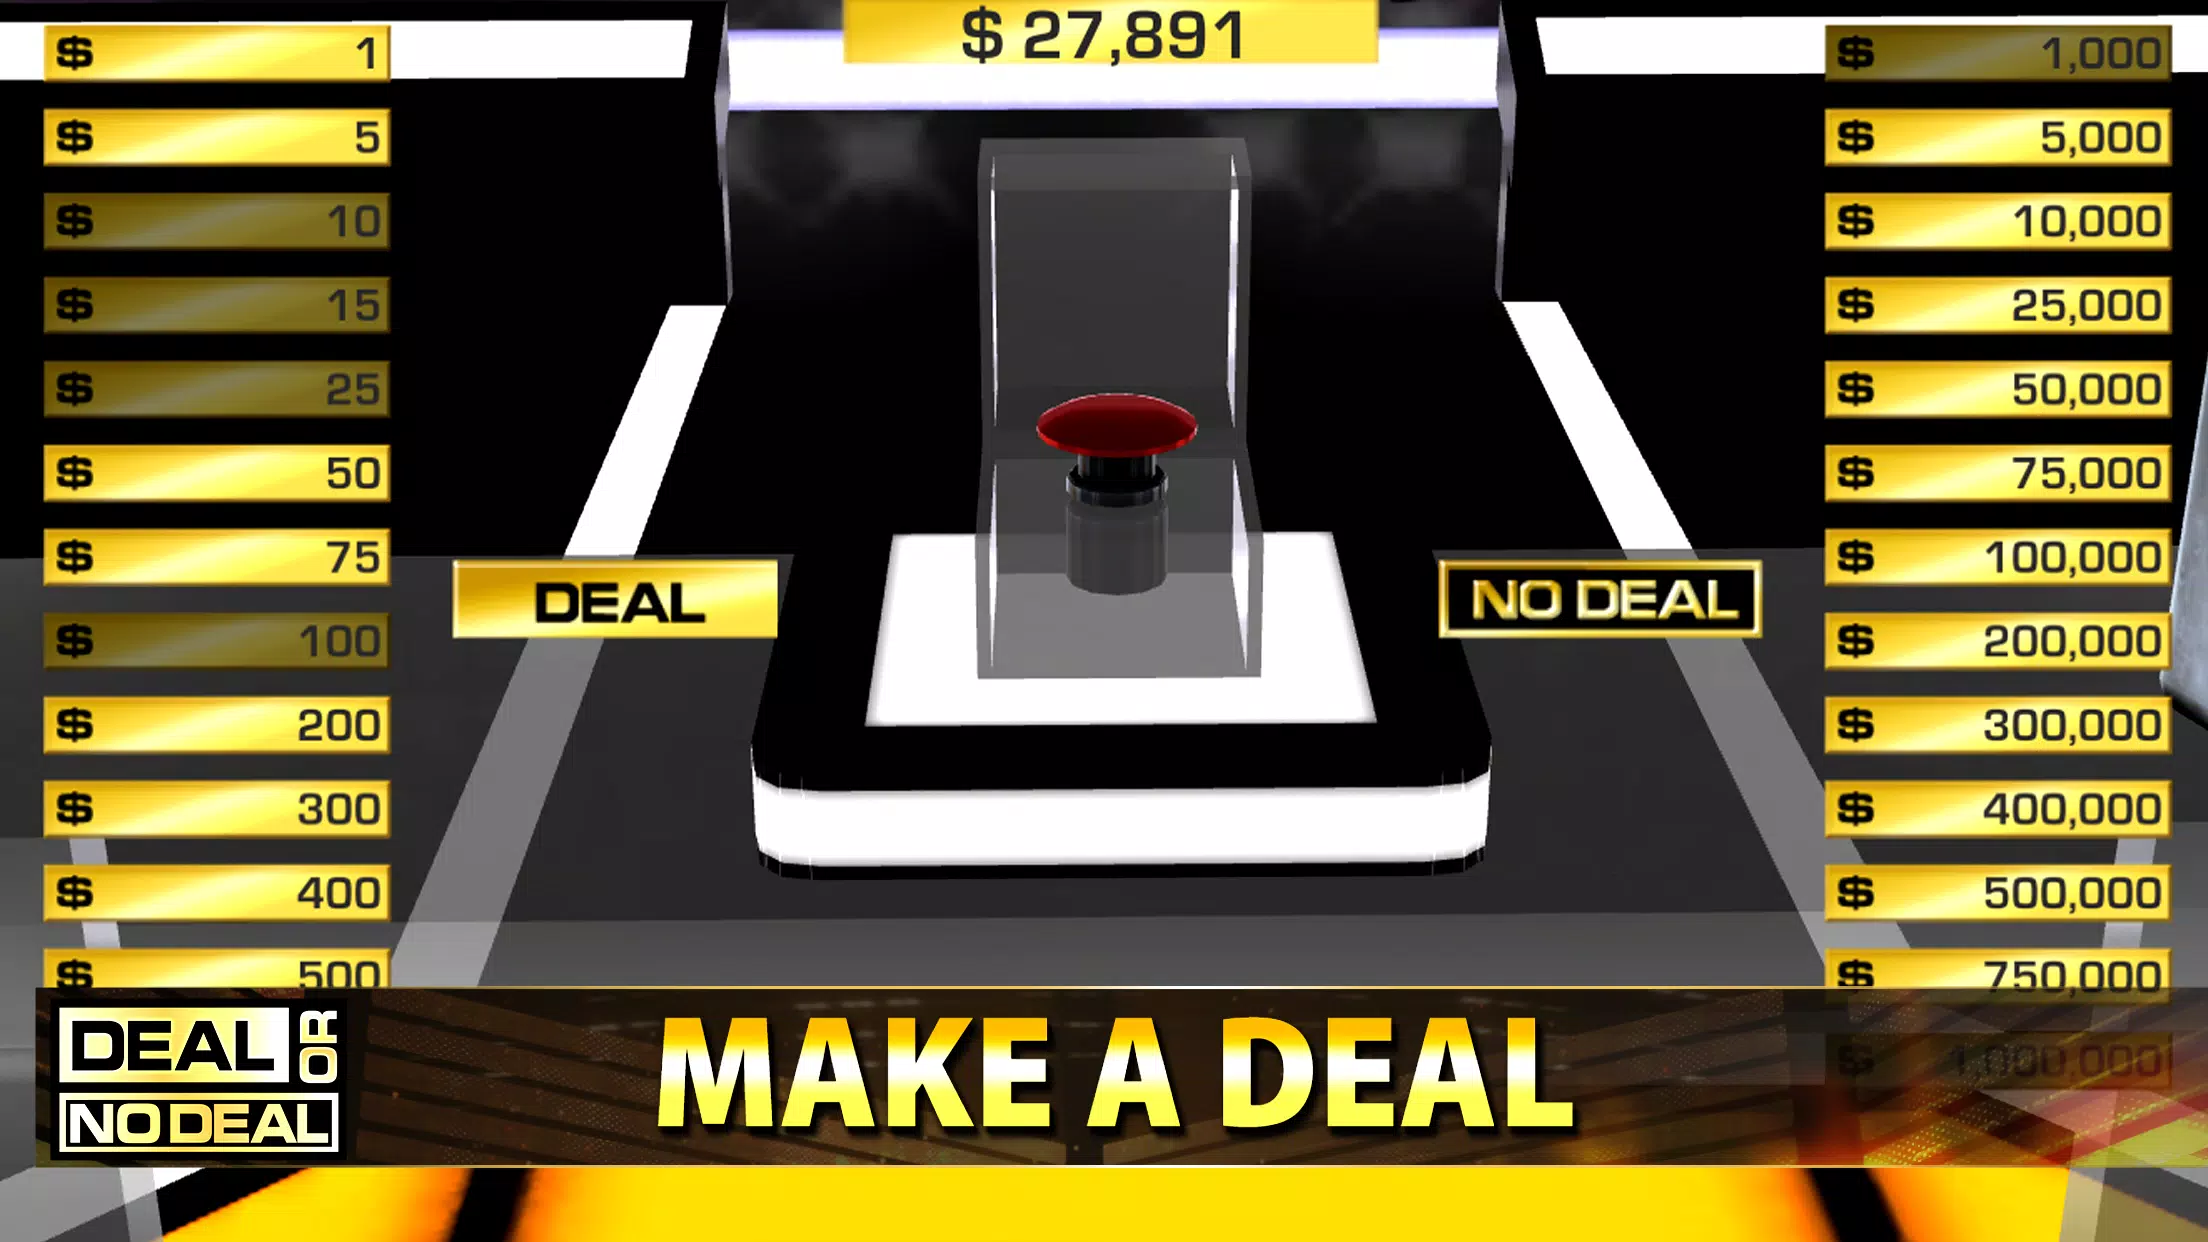 Deal or No Deal APK v2.21 Free Download - APK4Fun